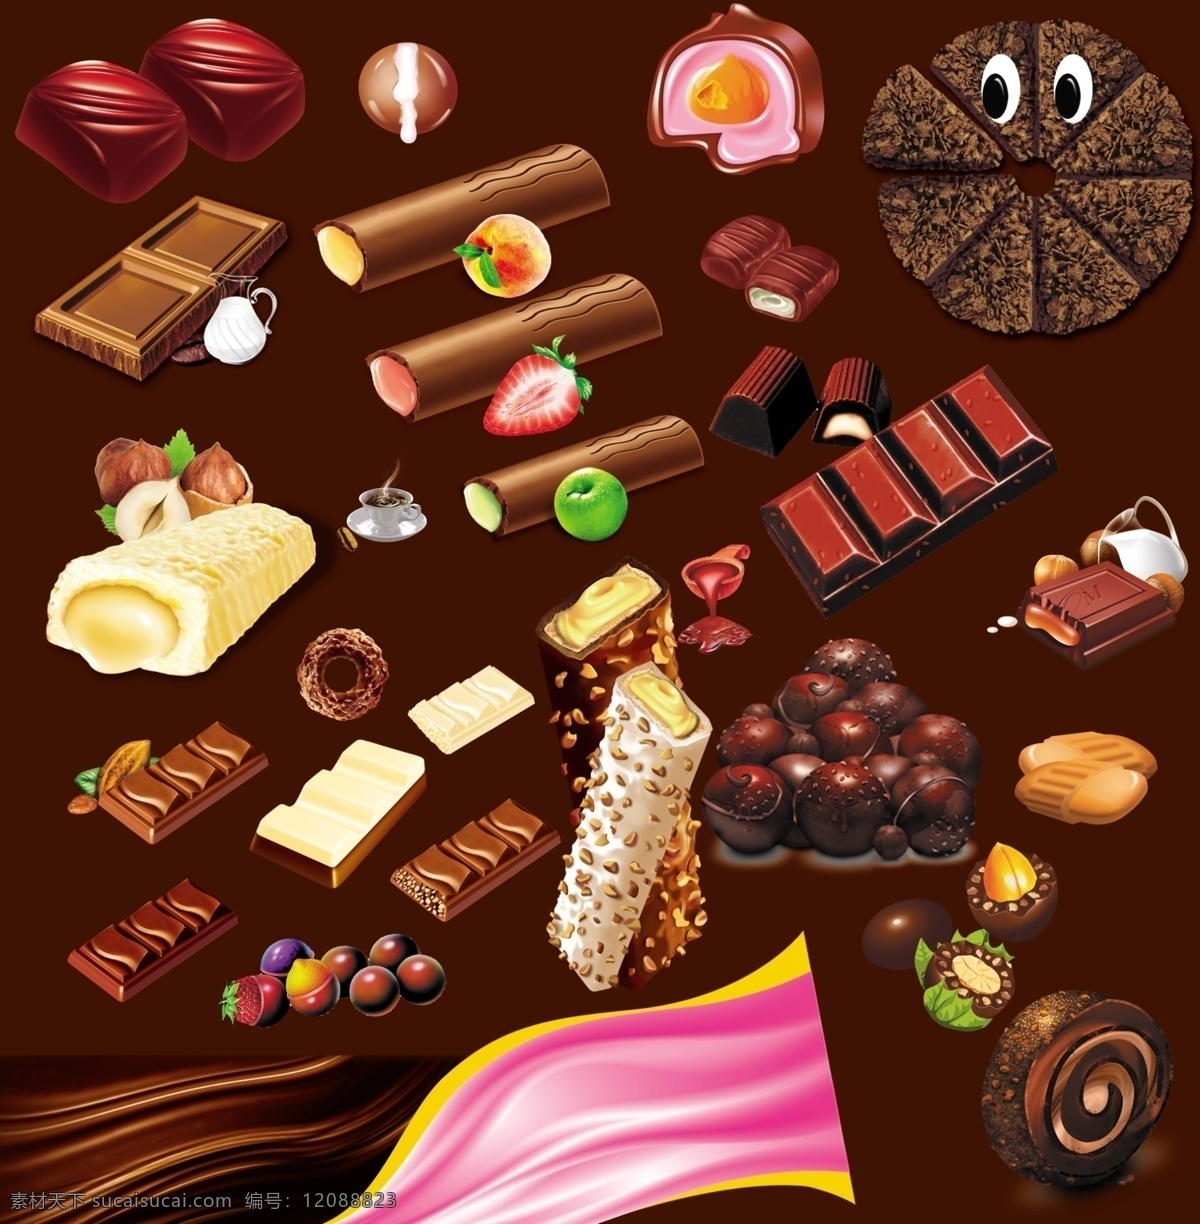 分层 源文件 巧克力 样子 模板下载 巧克力样子 夹心巧克力 牛奶巧克力 脆皮巧克力 巧克力纹 巧克力棒 巧克力圈 tiff psd源文件 餐饮素材